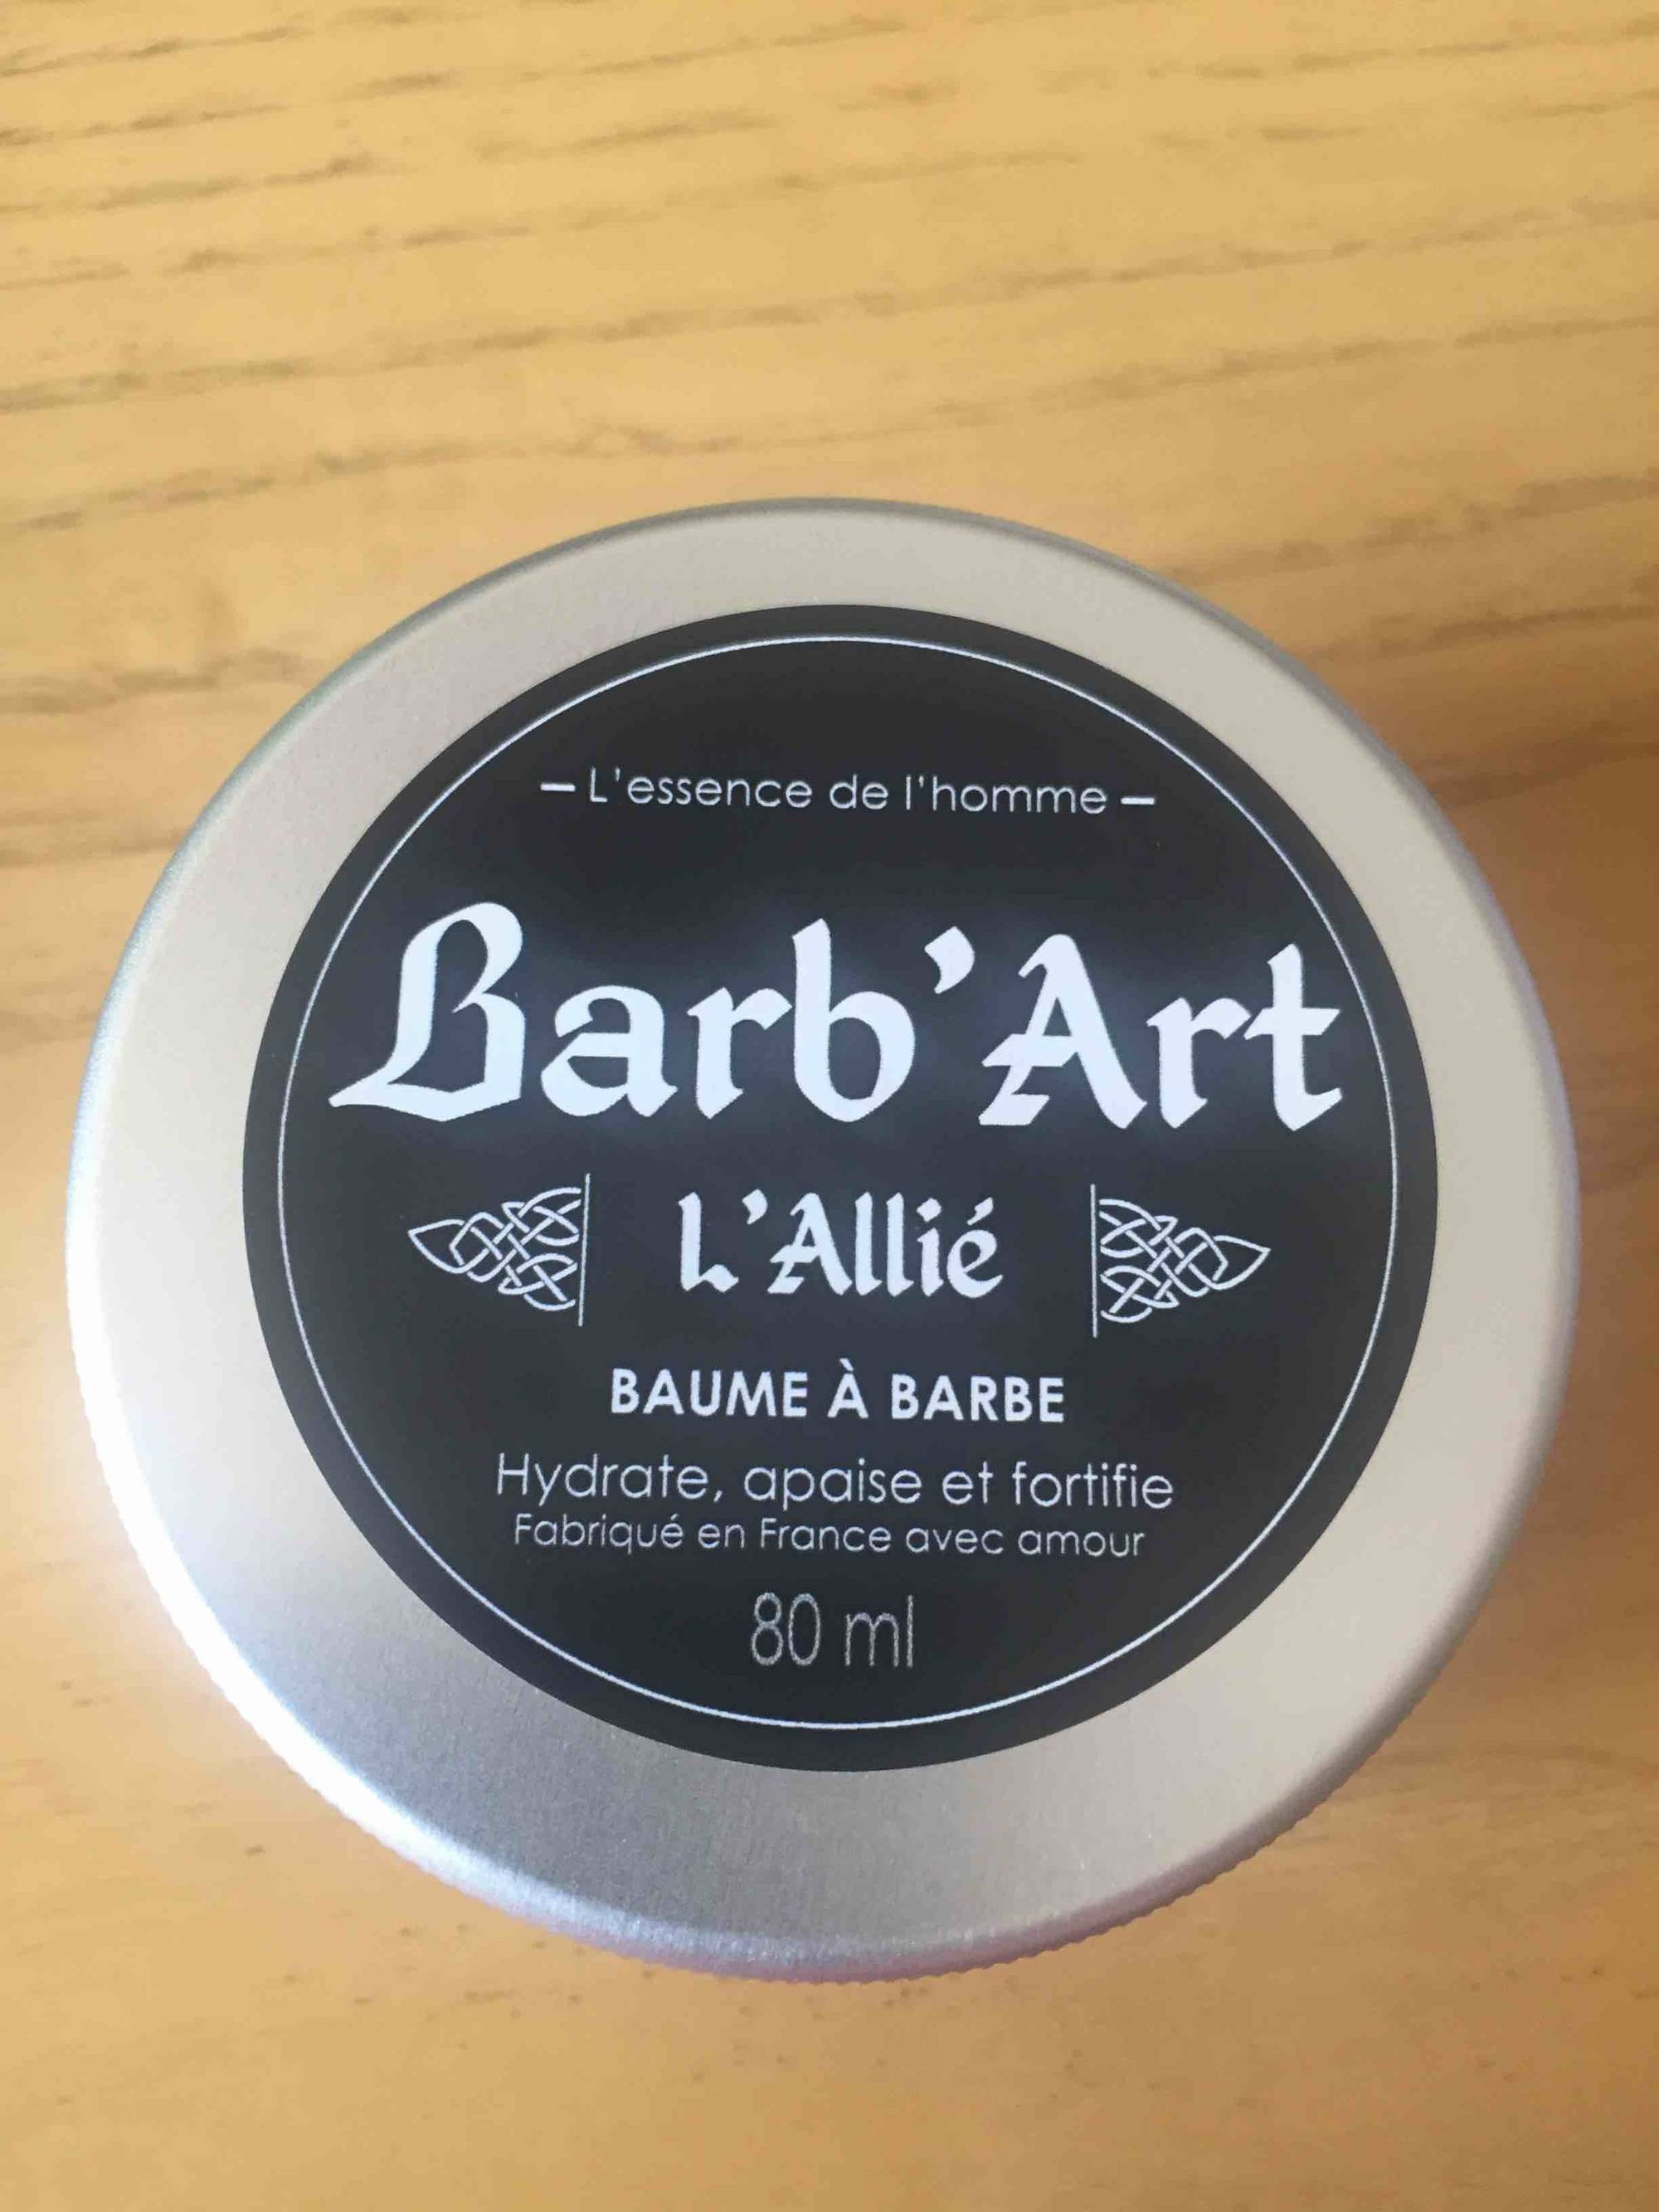 BARB'ART - L'Allié - Baume à barbe